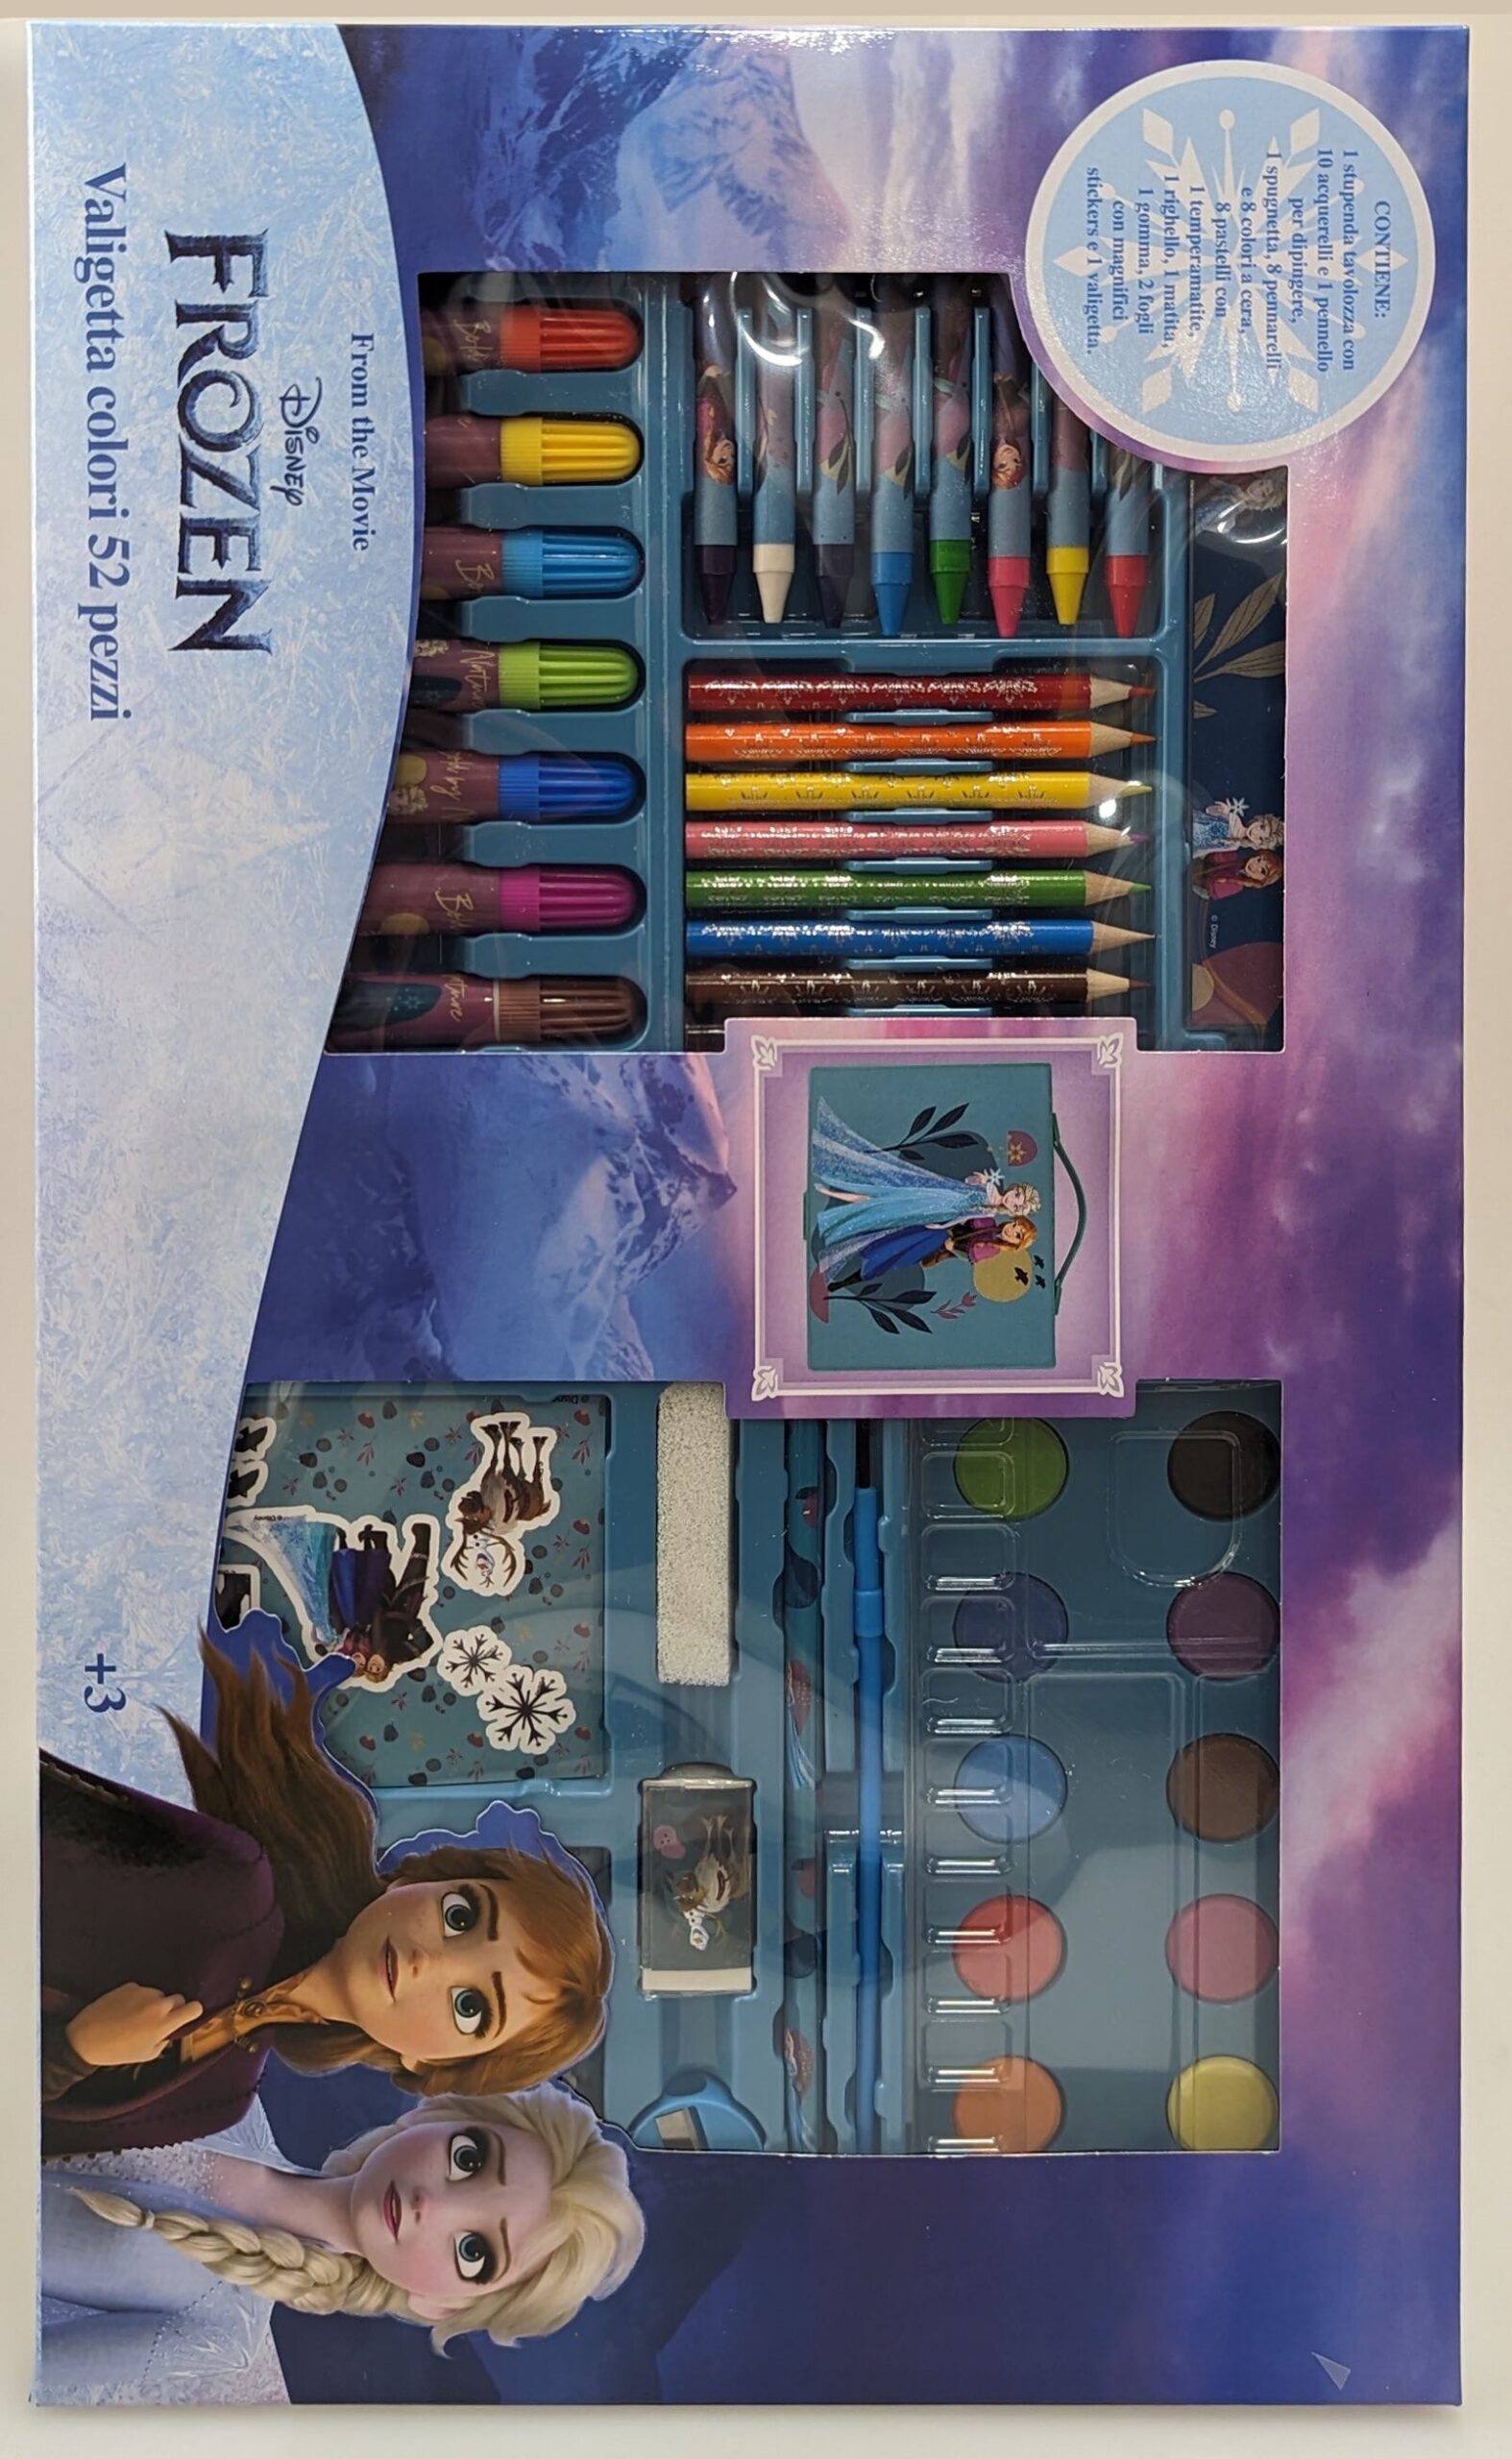 Peppa Pig Valigetta Colori per Bambini, Kit Colori per Disegnare e